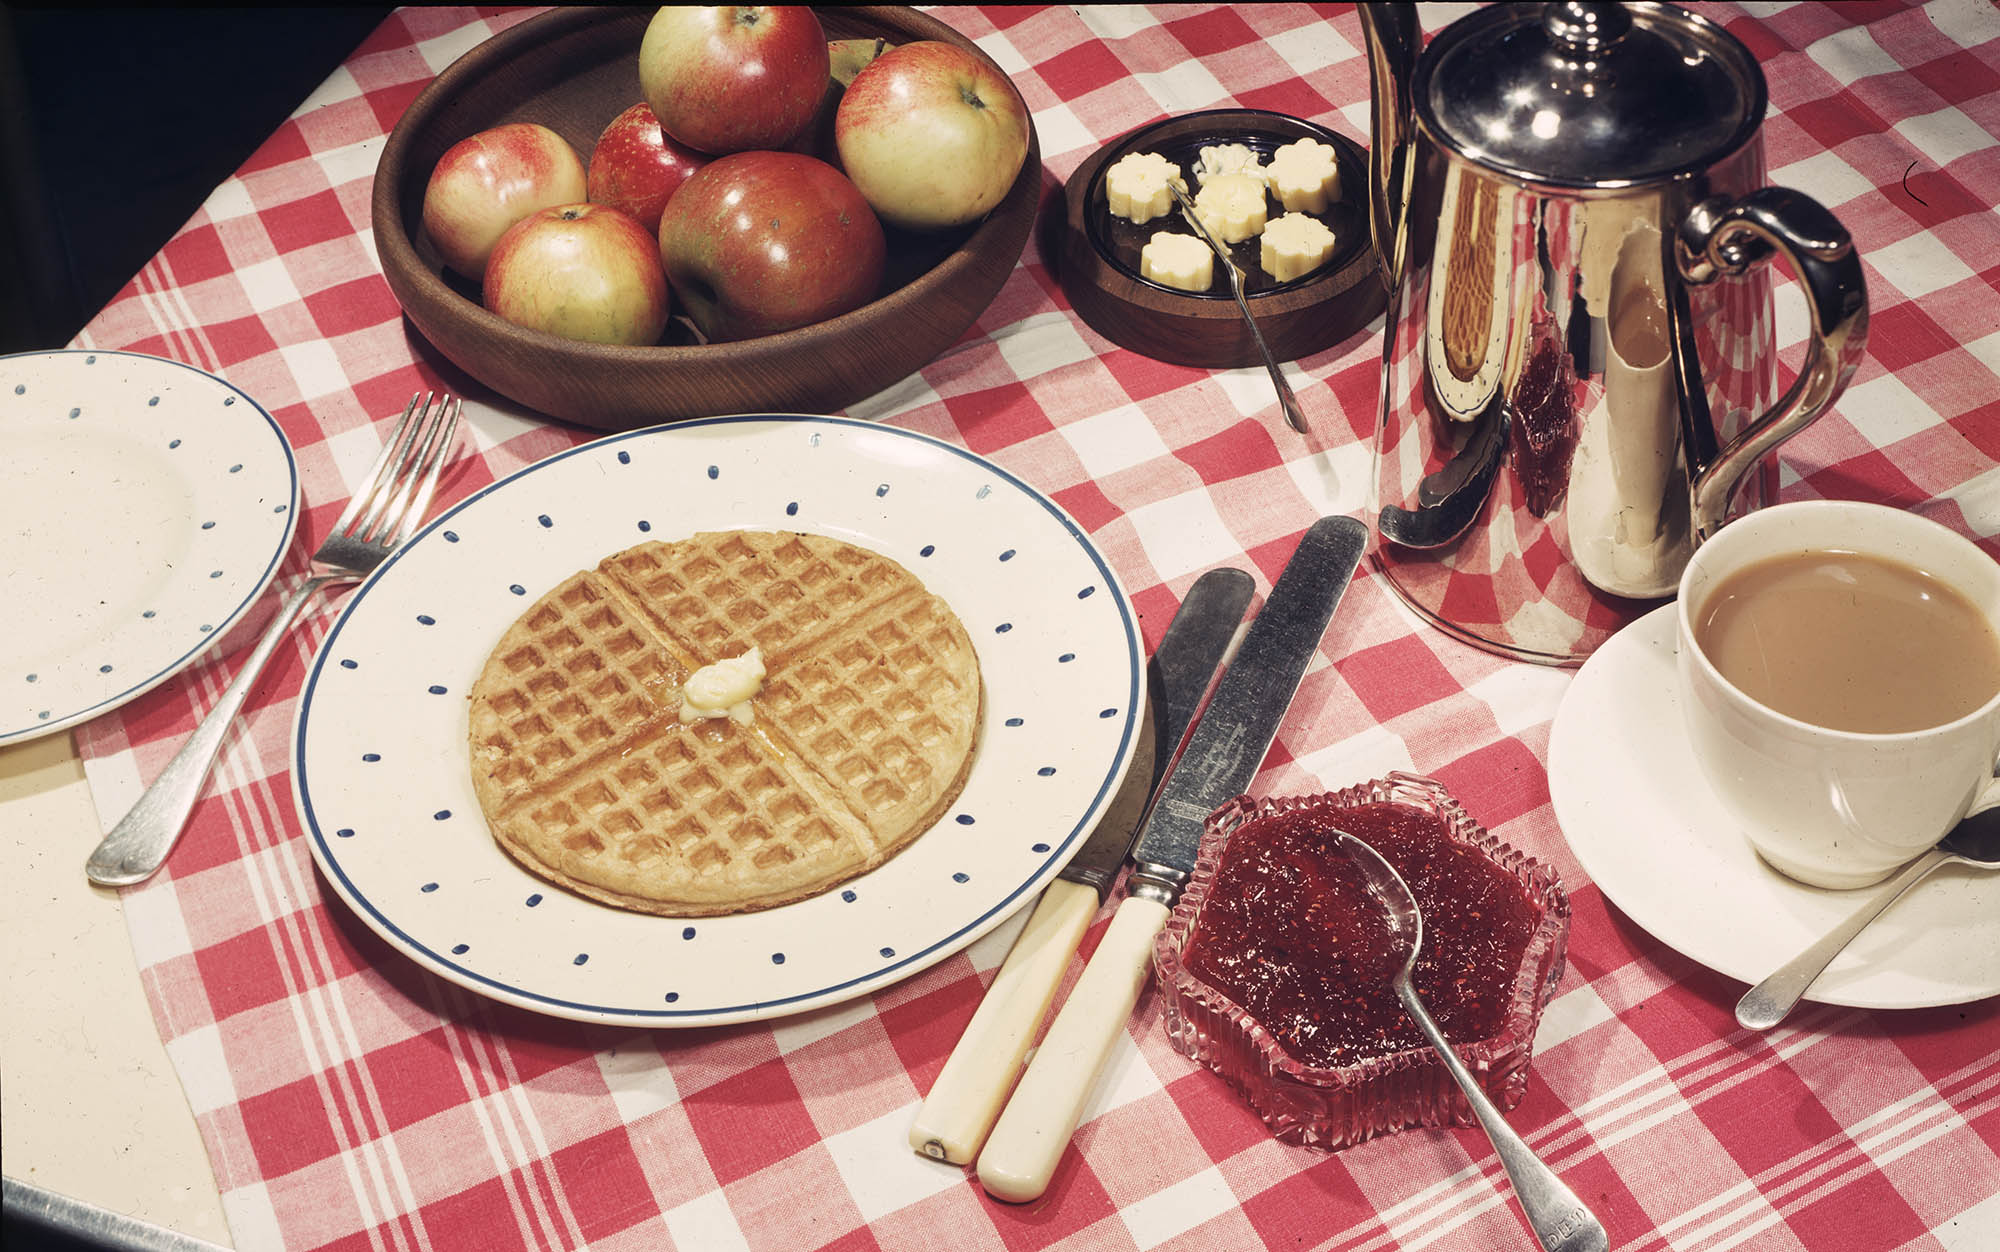 A breakfast spread in 1947.